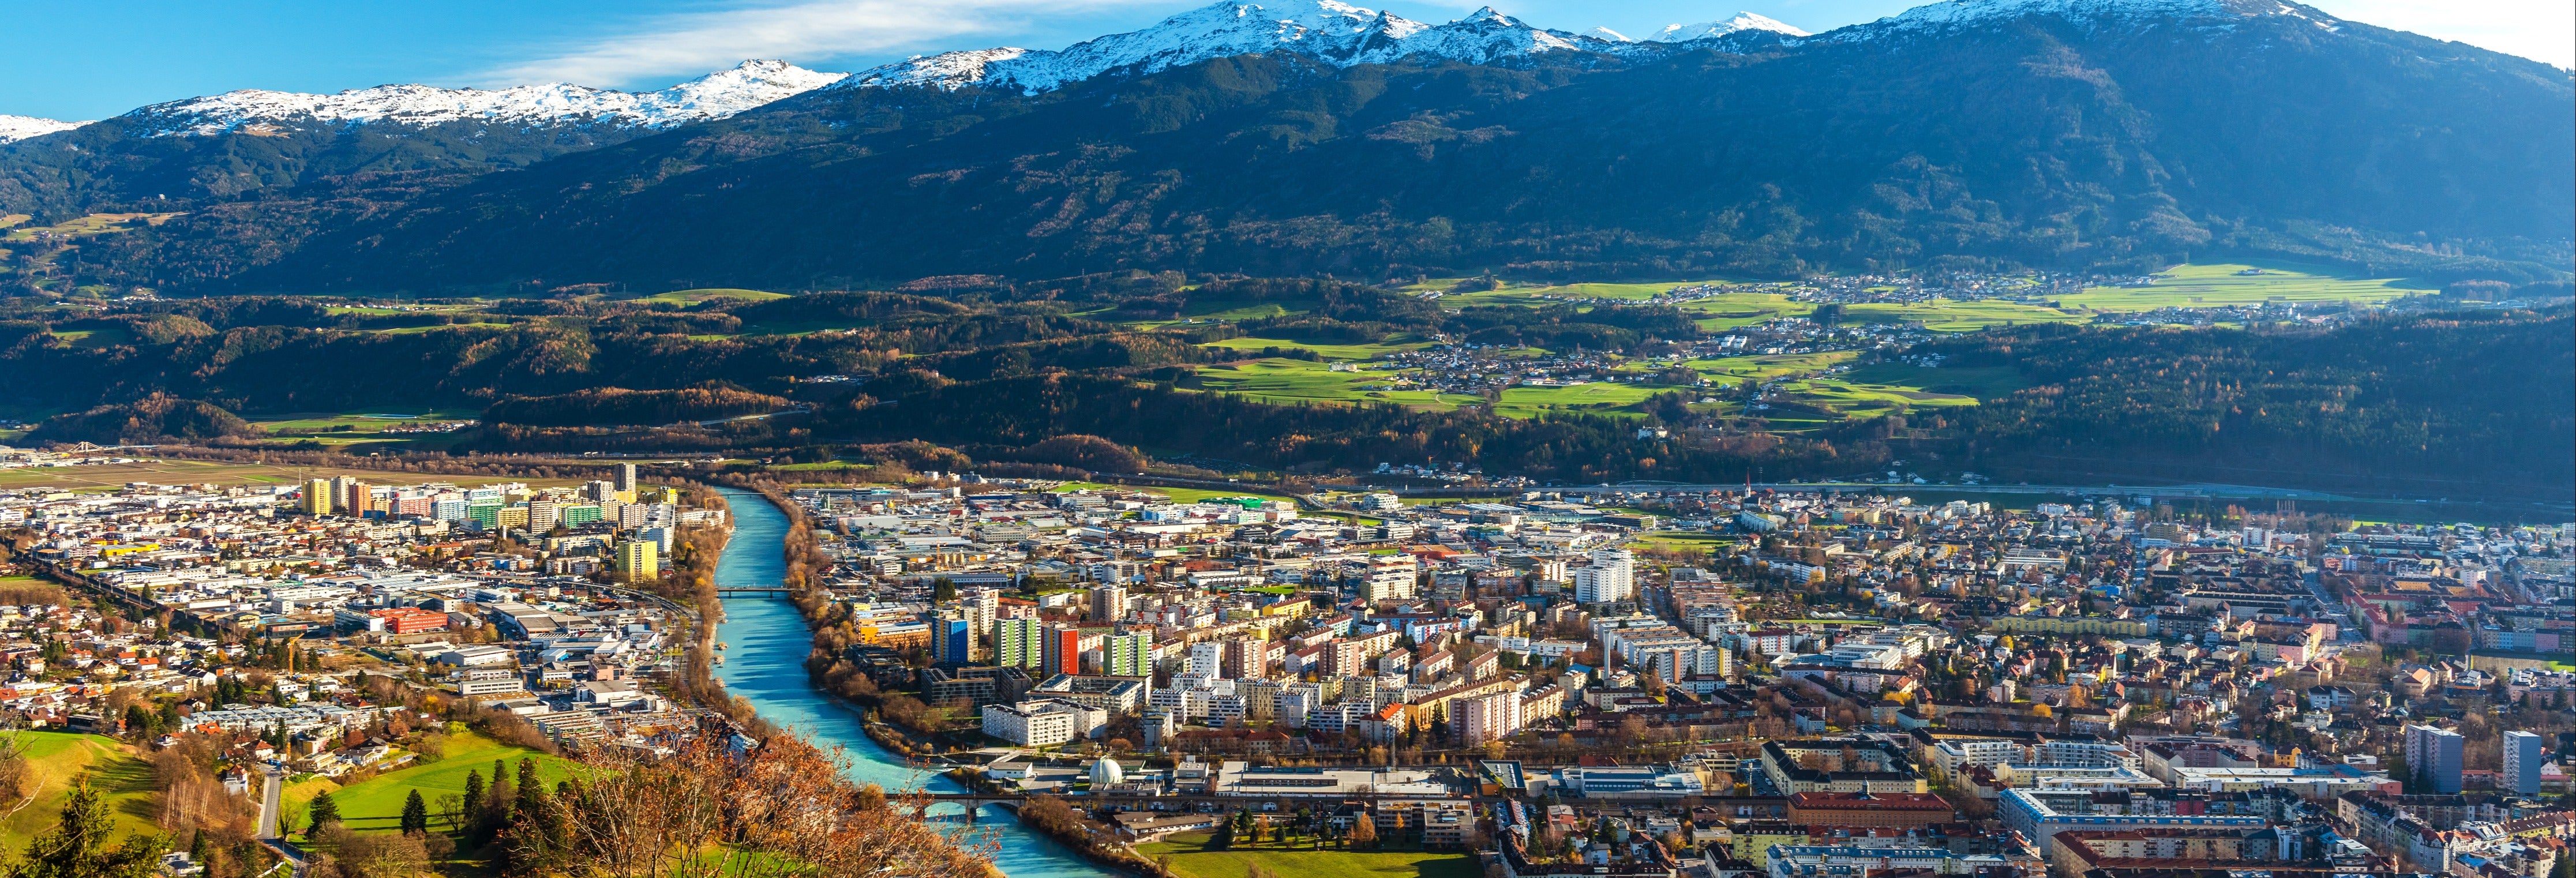 Excursão a Tirol e Innsbruck